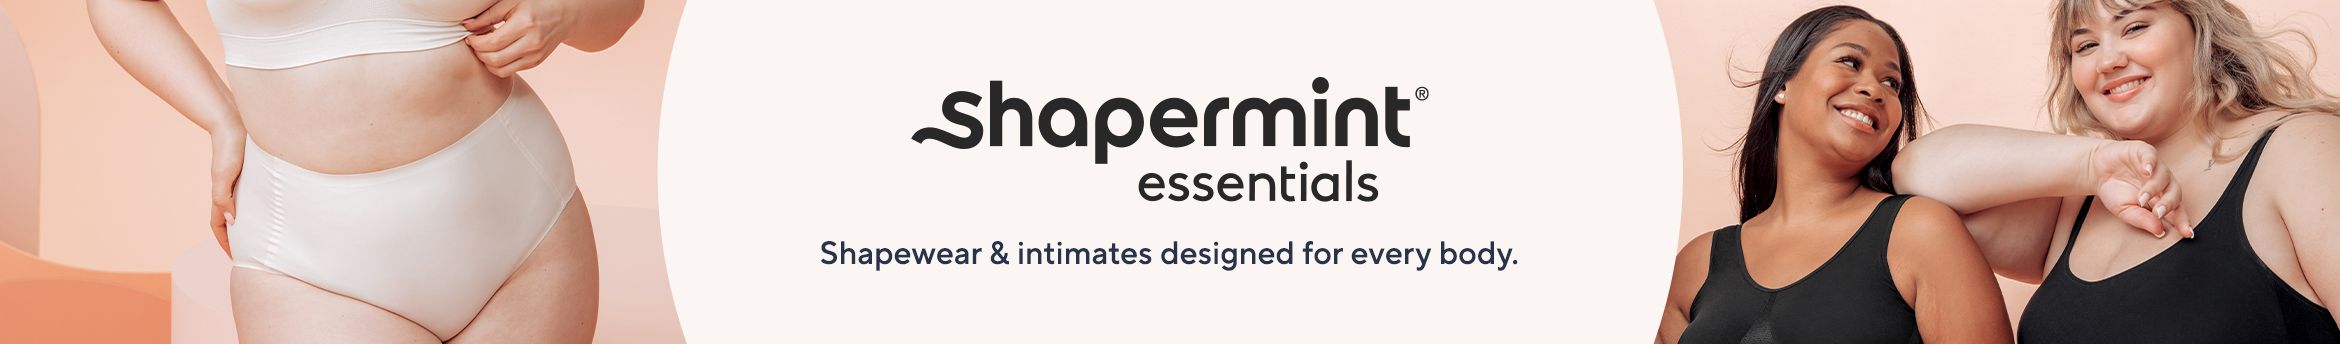 Shapermint Body Shaper Tummy Control Panty - Shapewear for Women